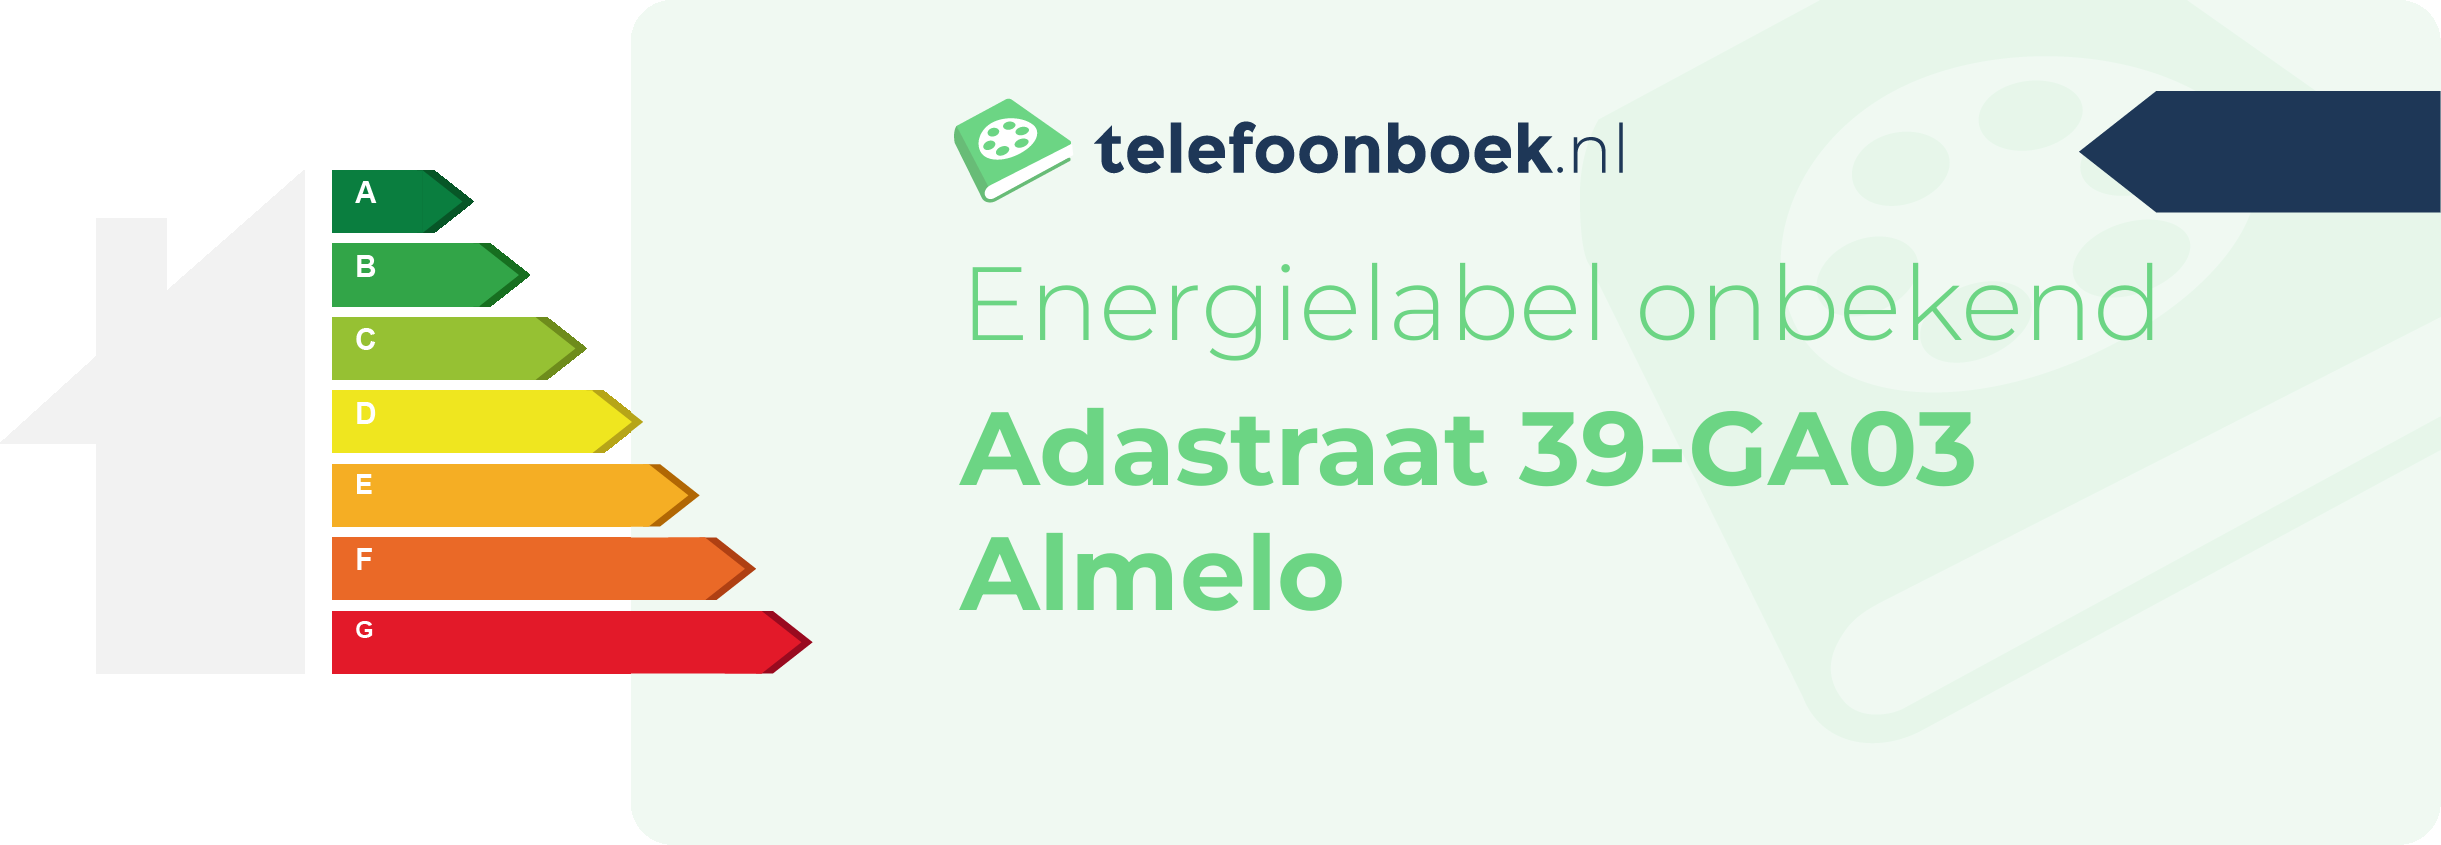 Energielabel Adastraat 39-GA03 Almelo